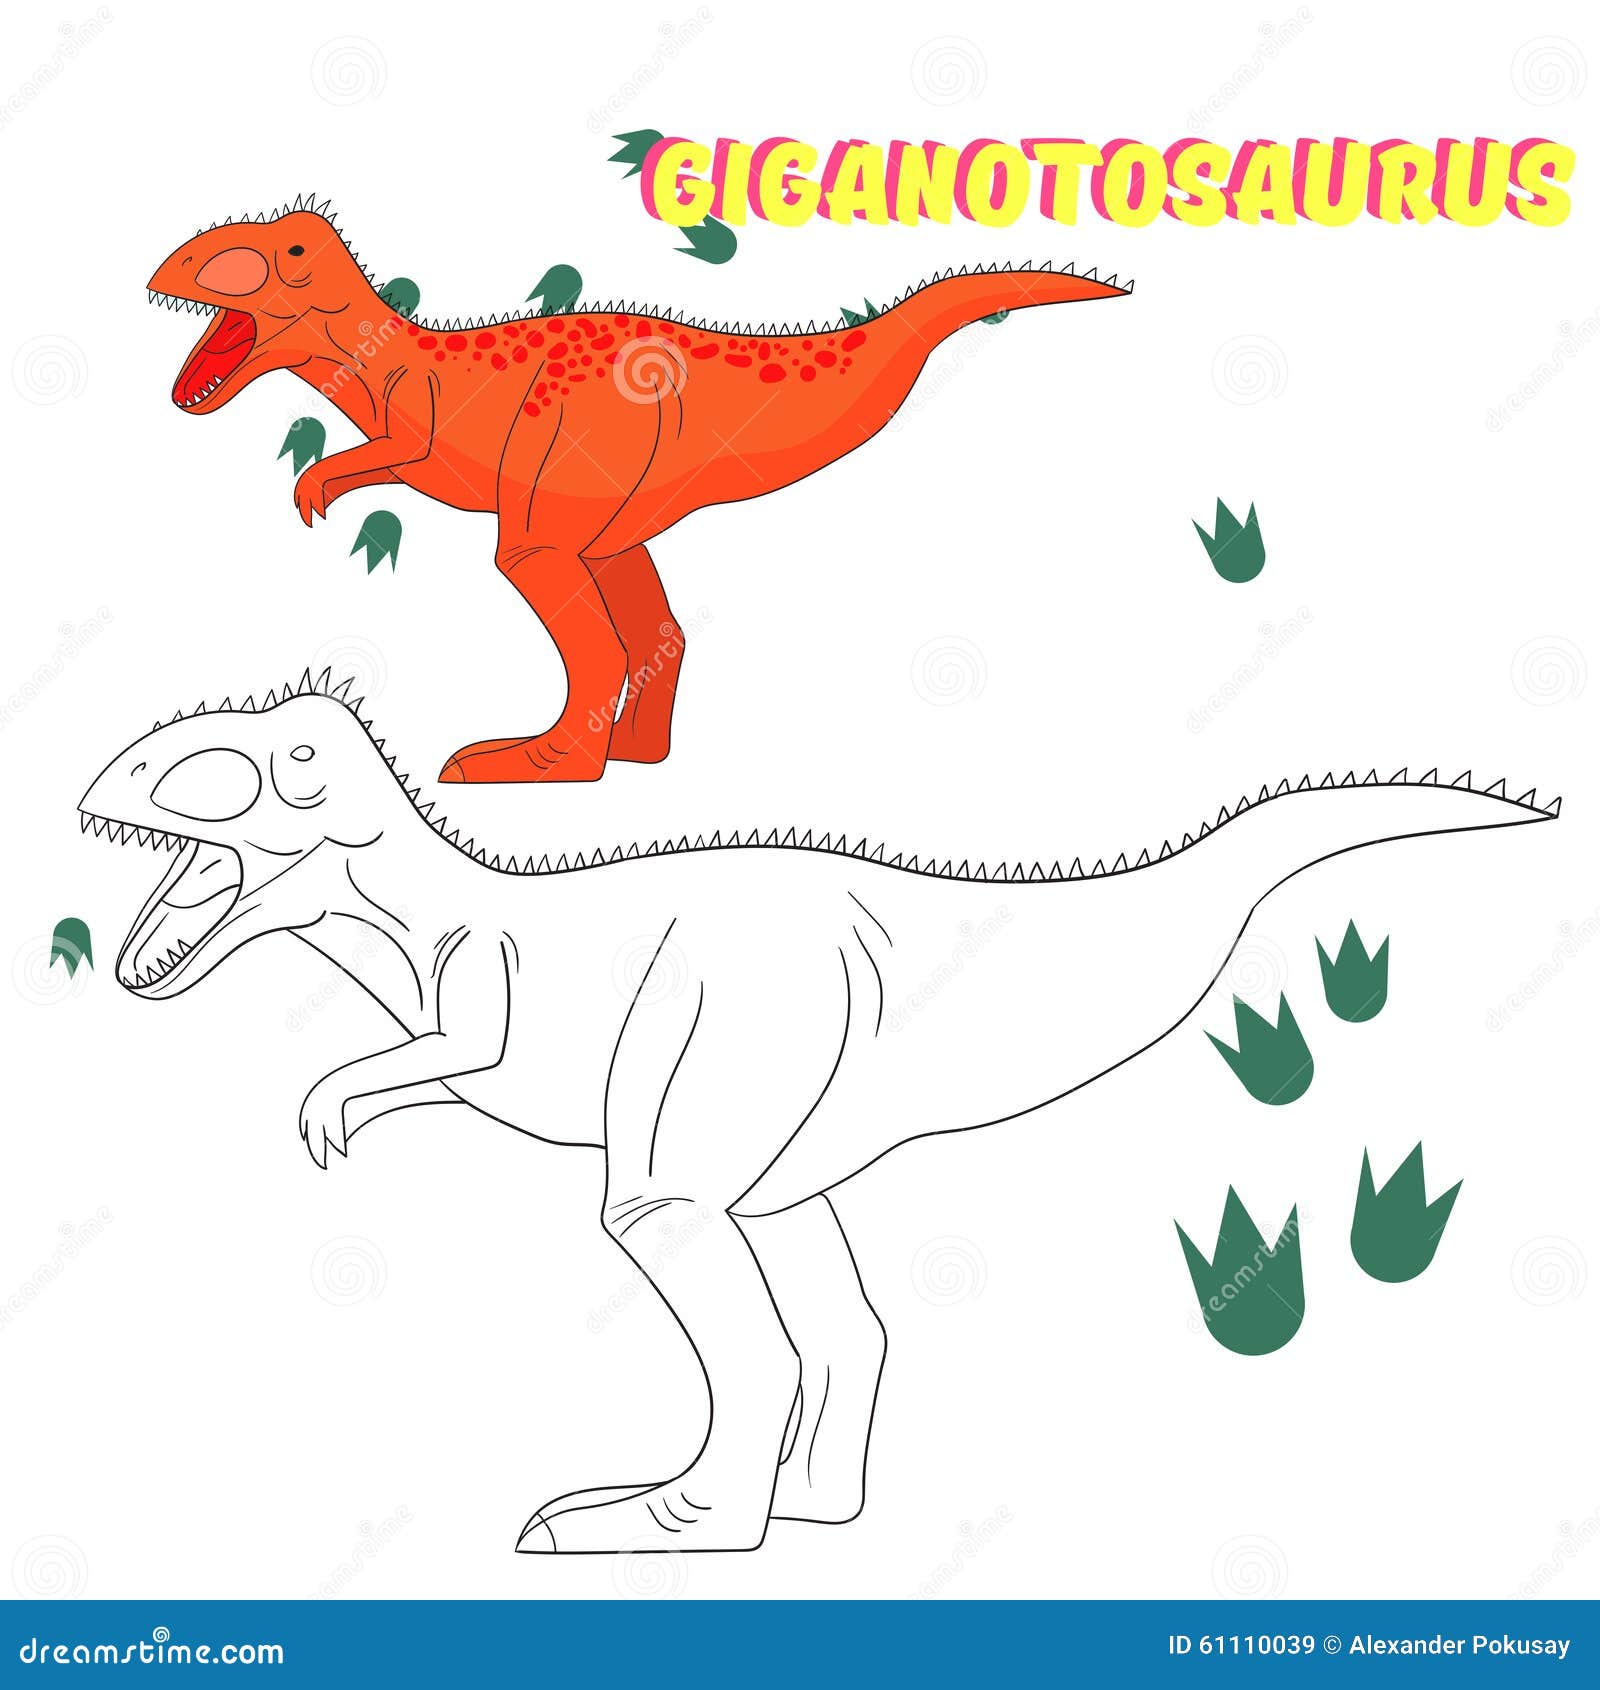 Vetores e ilustrações de Jogo dinossauro para download gratuito